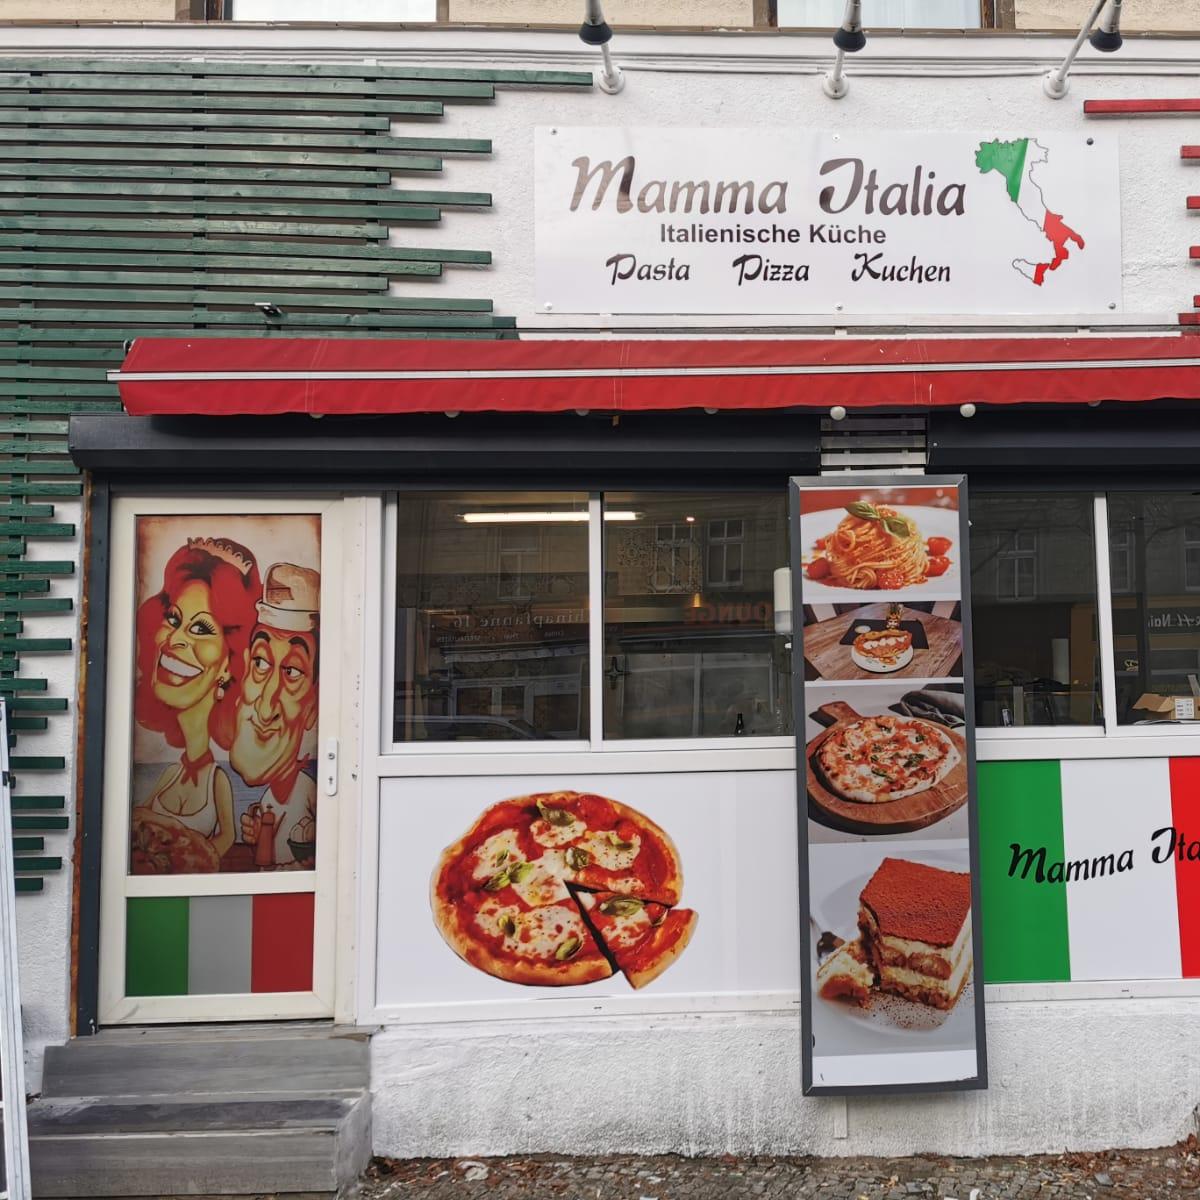 Restaurant "Mamma Italia" in Eberswalde